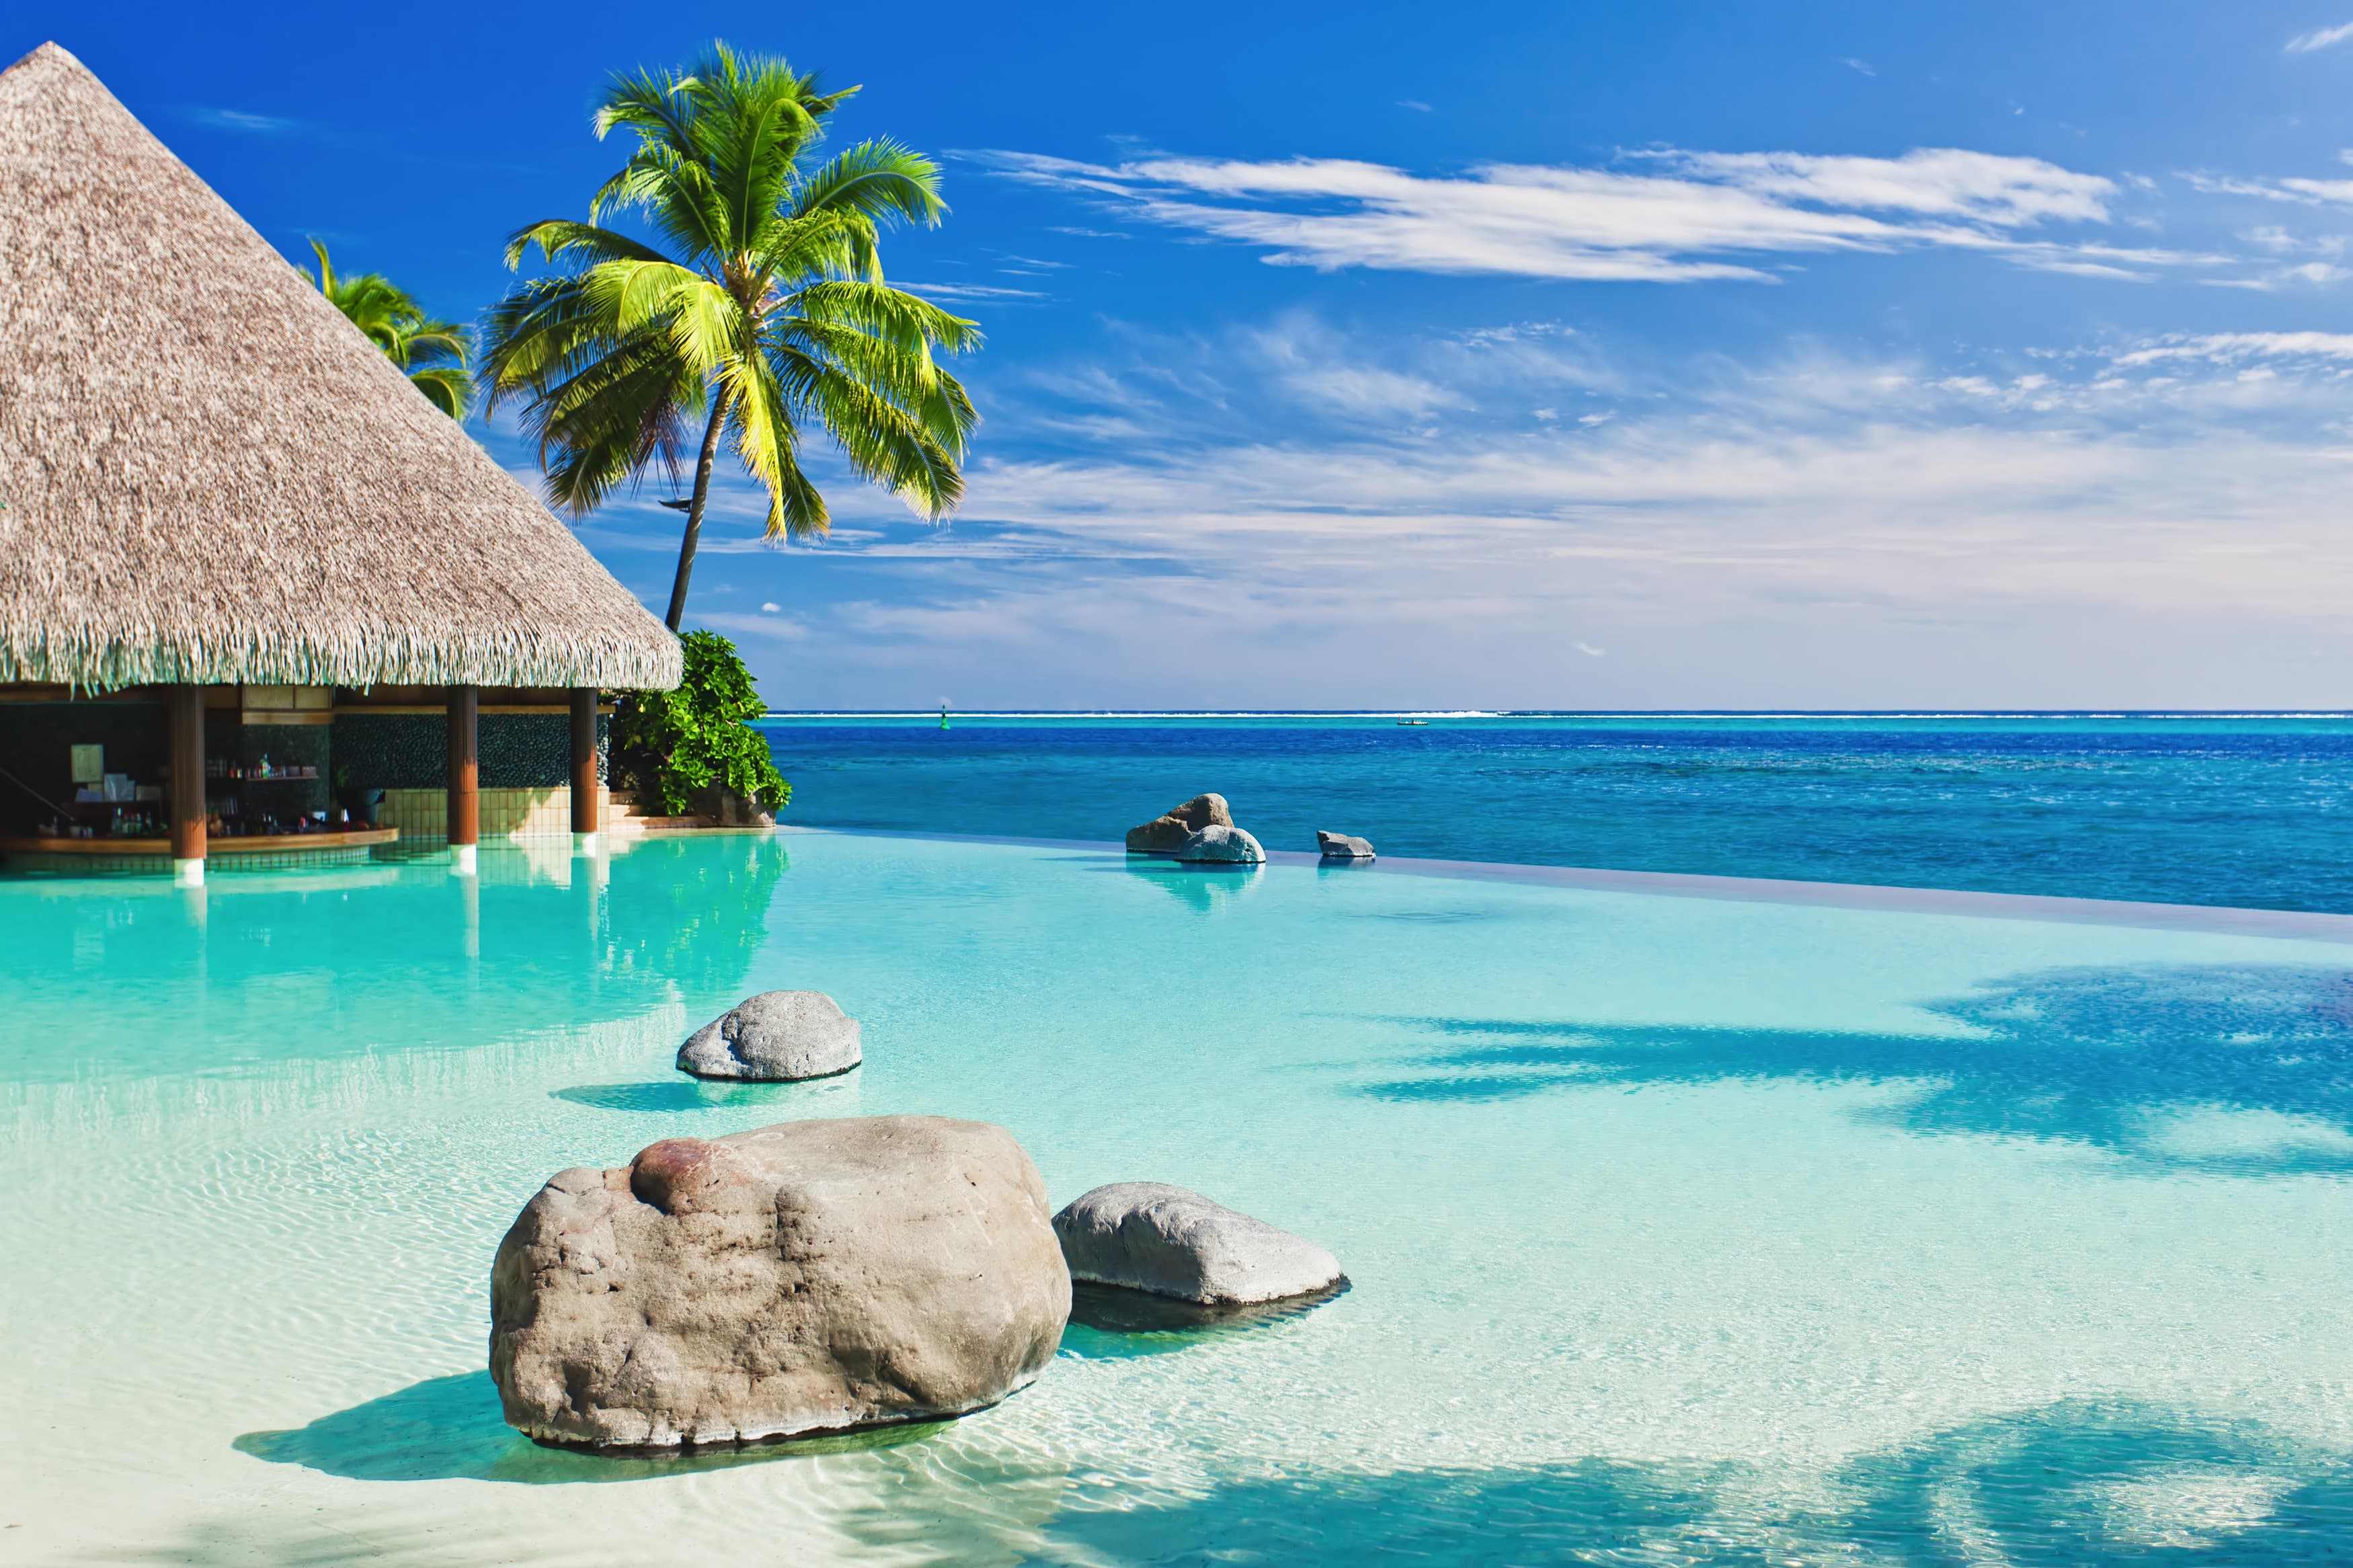 Море экзотика. Черепаший остров Фиджи. Остров Киа Фиджи. Райский остров.